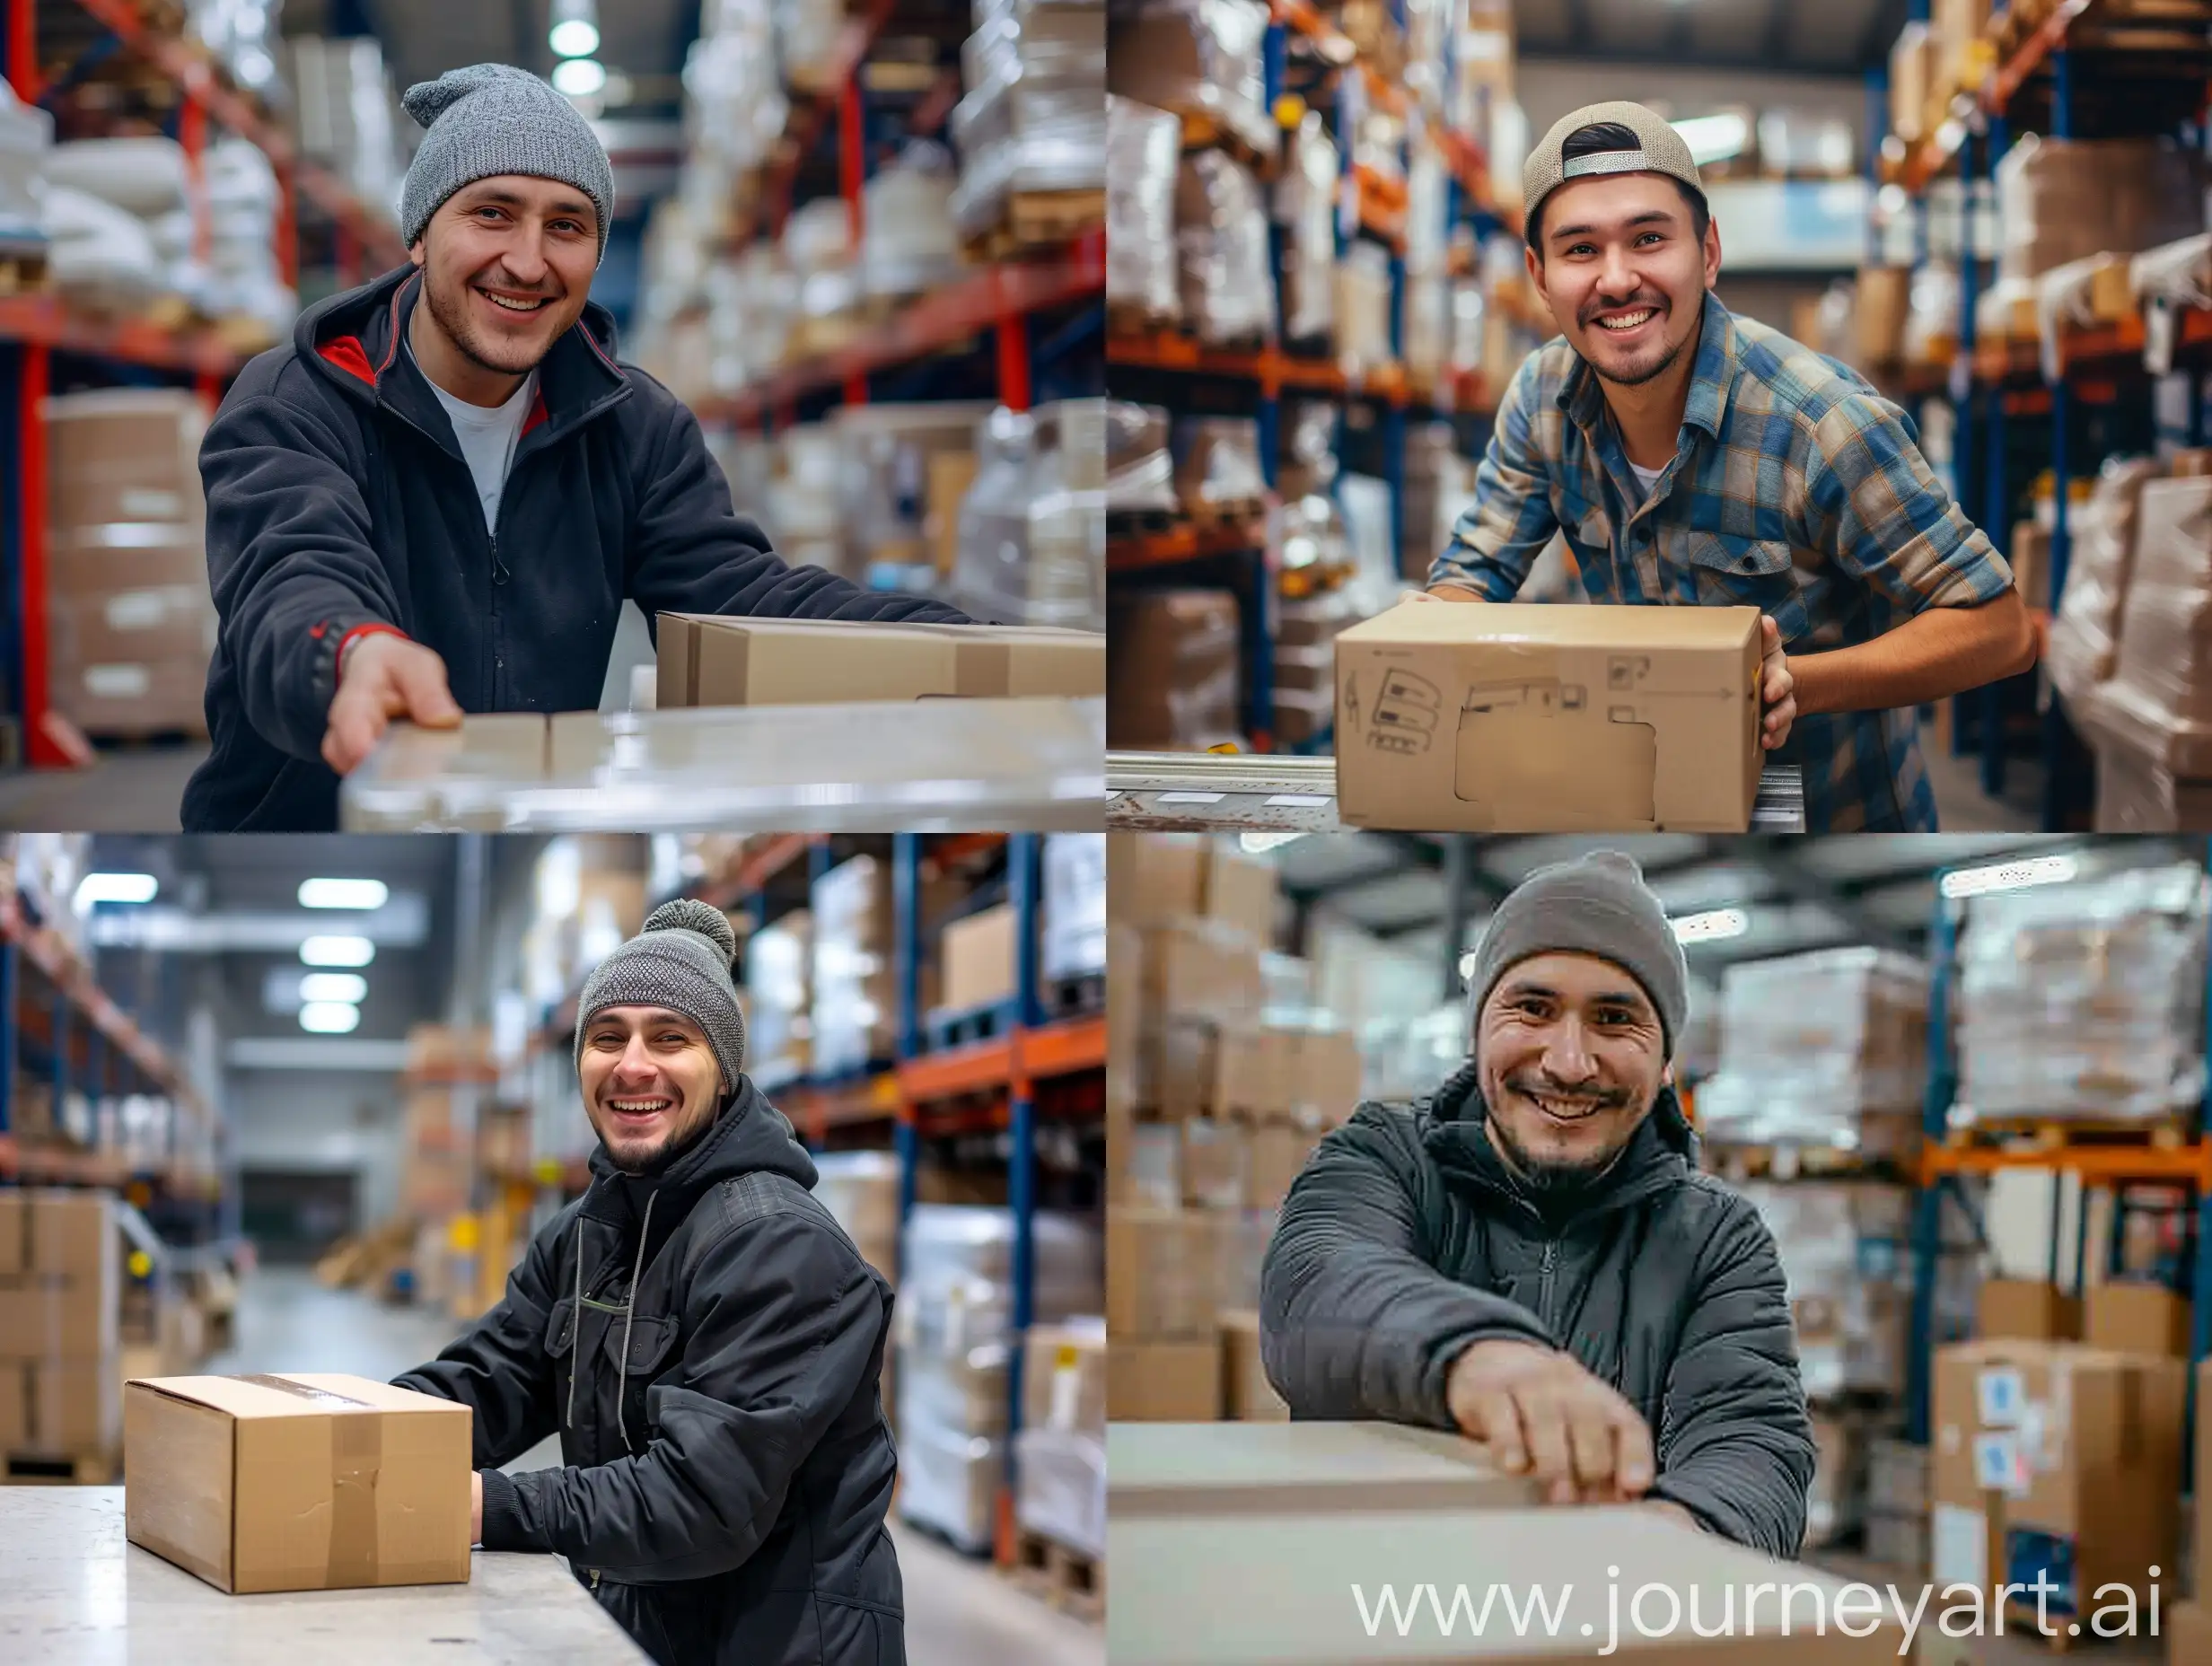 работник склада славянской внешности без шапки улыбается на складе и ставит коробку на стол